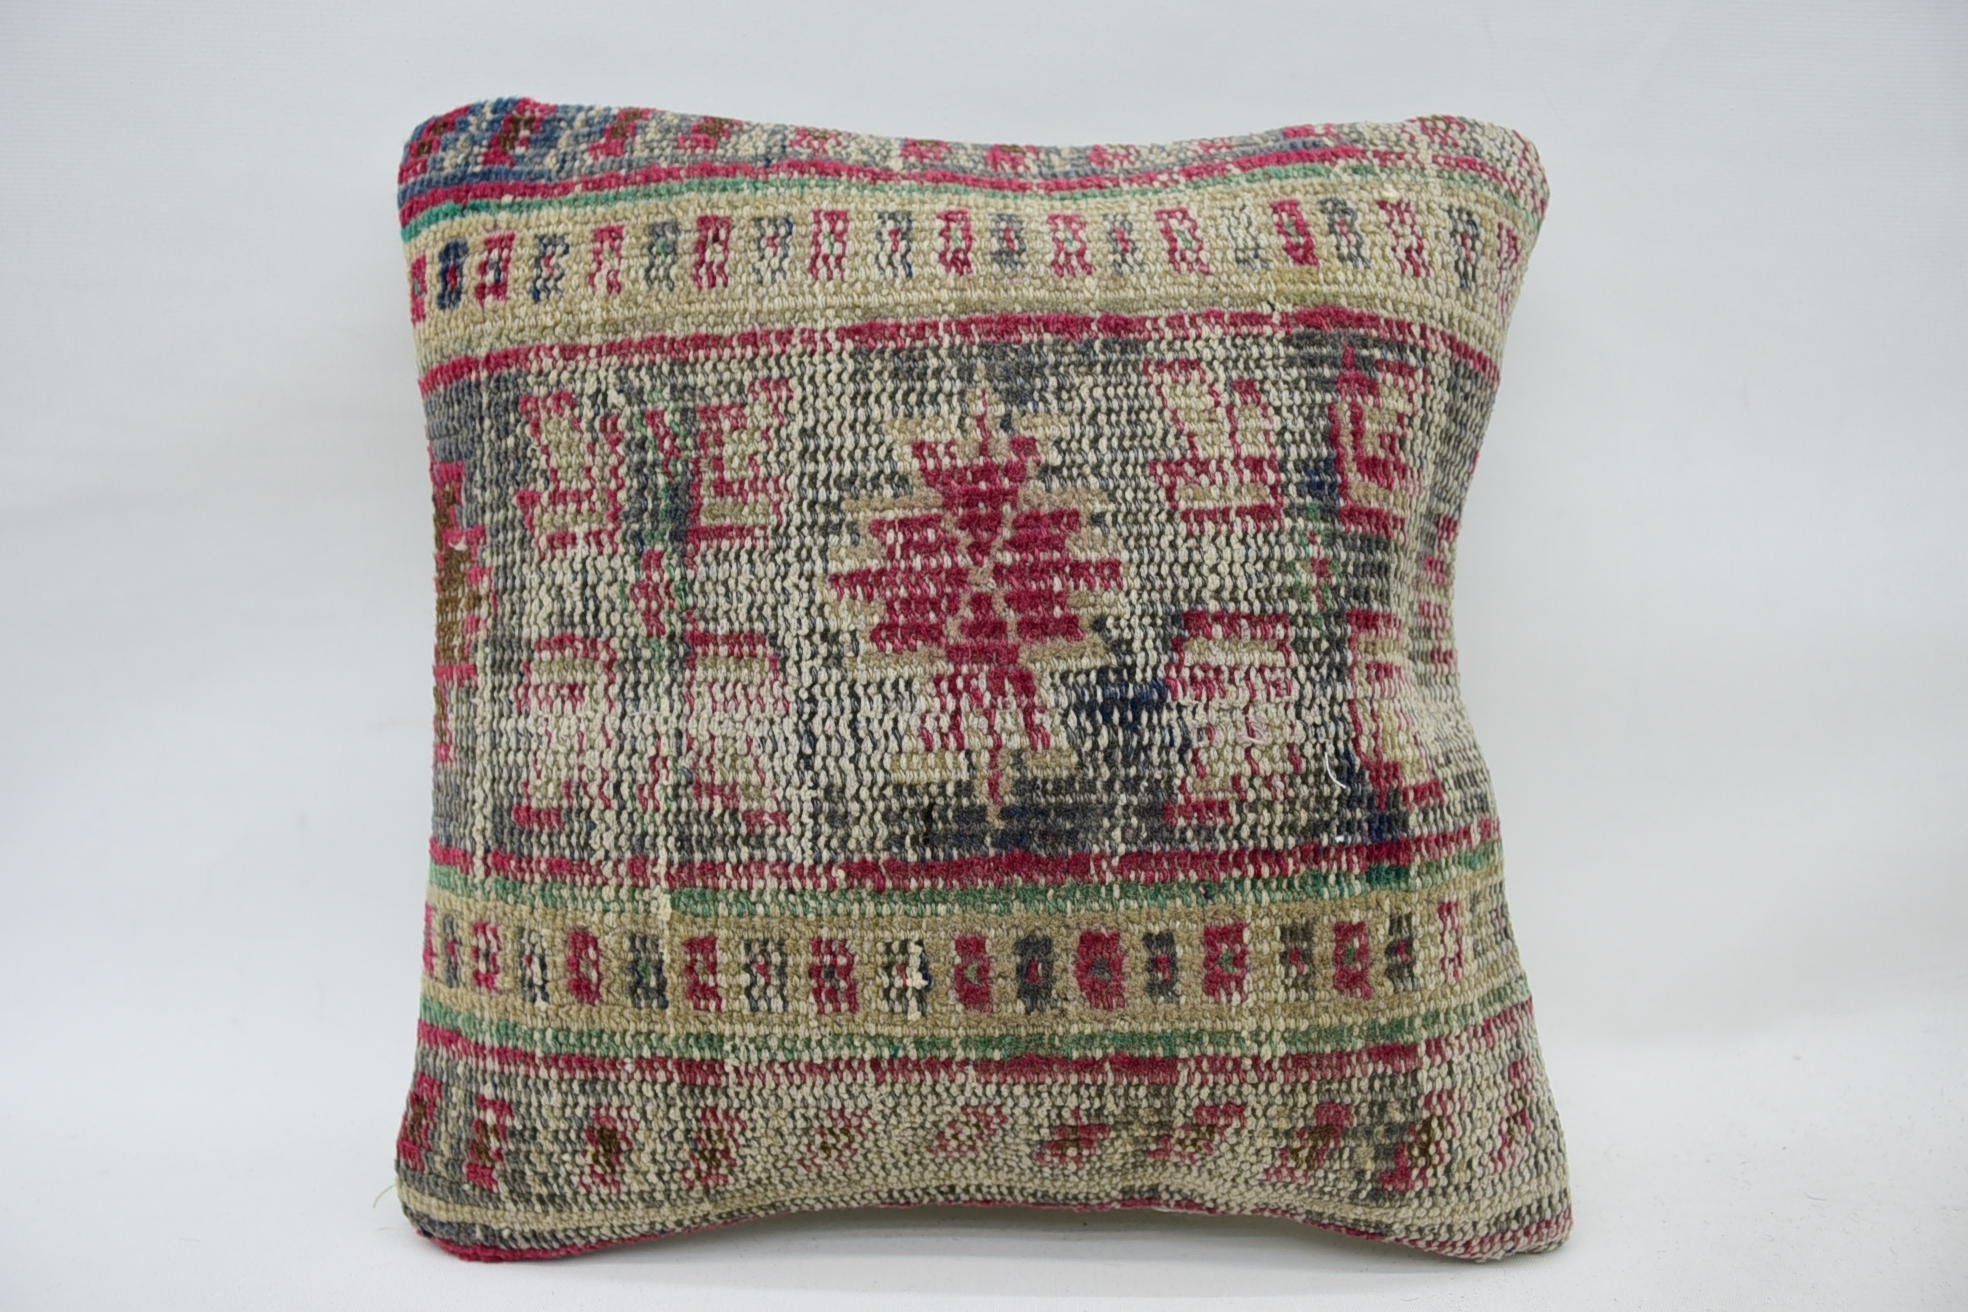 Yoga Pillow Cover, Throw Kilim Pillow, Gift Pillow, 14"x14" Beige Pillow Sham, Turkish Pillow, Crochet Pattern Pillow